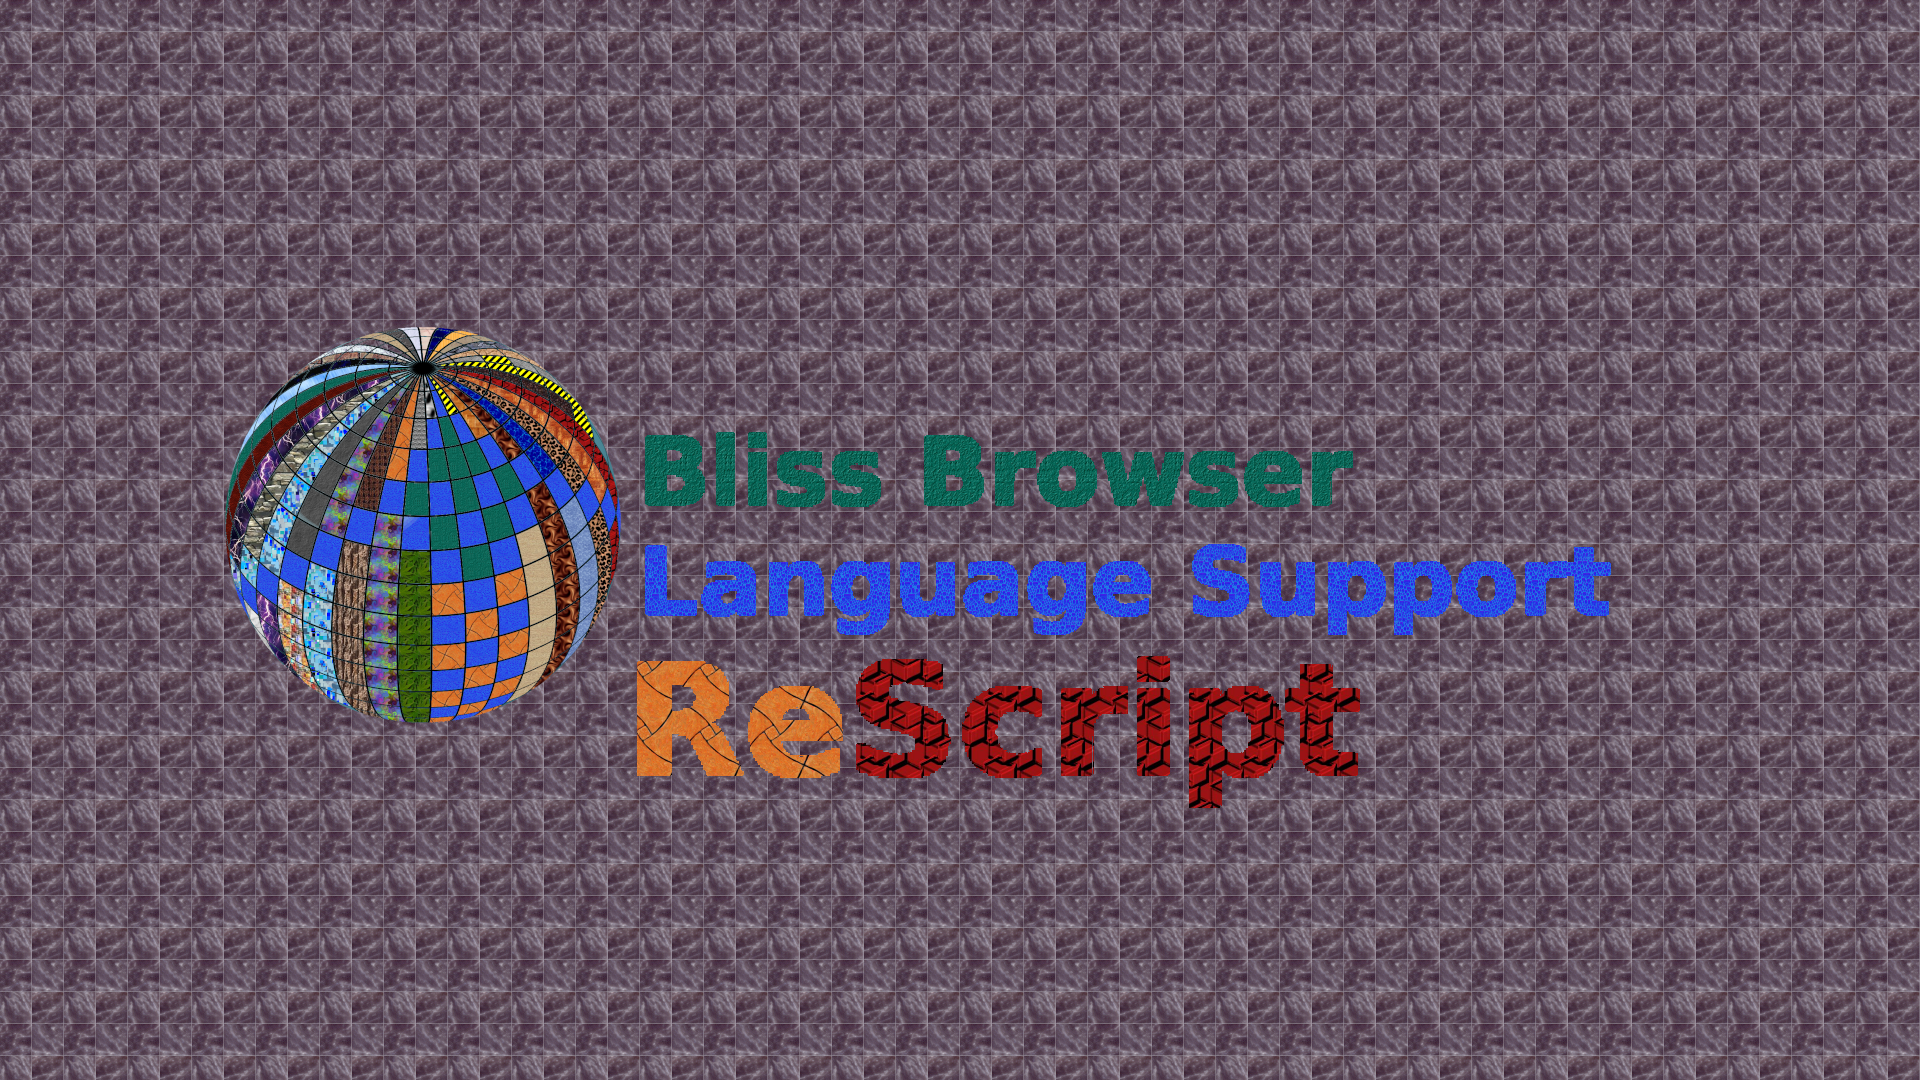 Bliss_Browser_ReScript